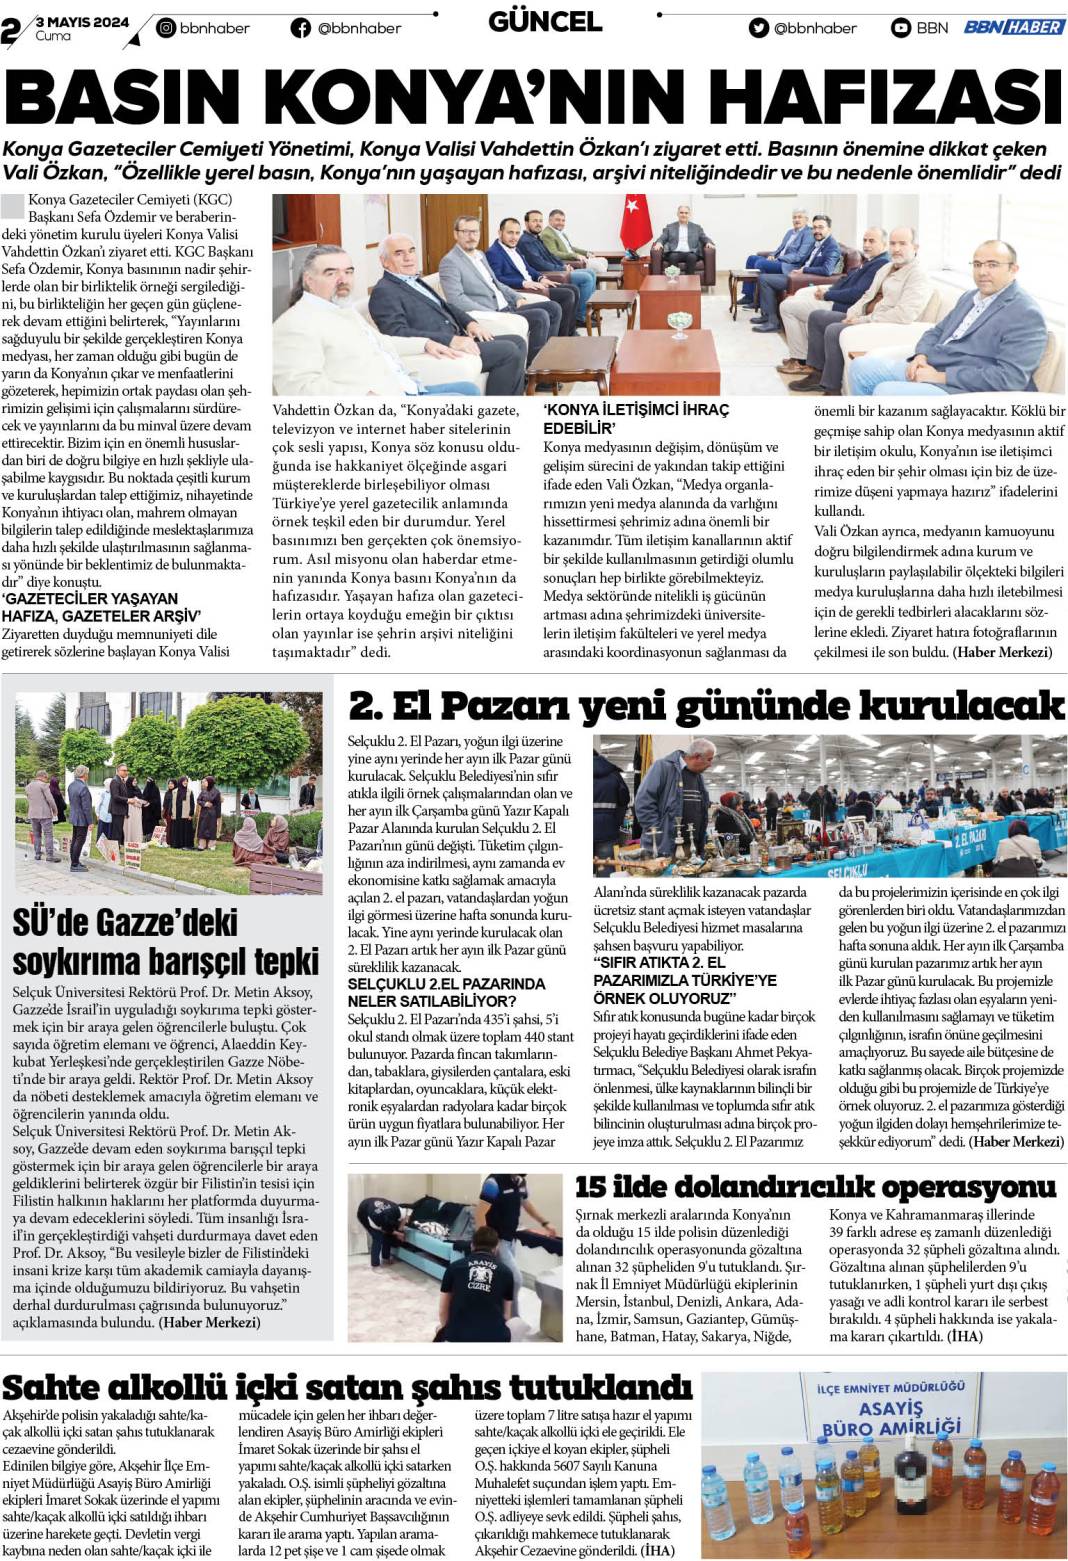 27 Eylül 2022 Salı BBN Haber e Gazete 2